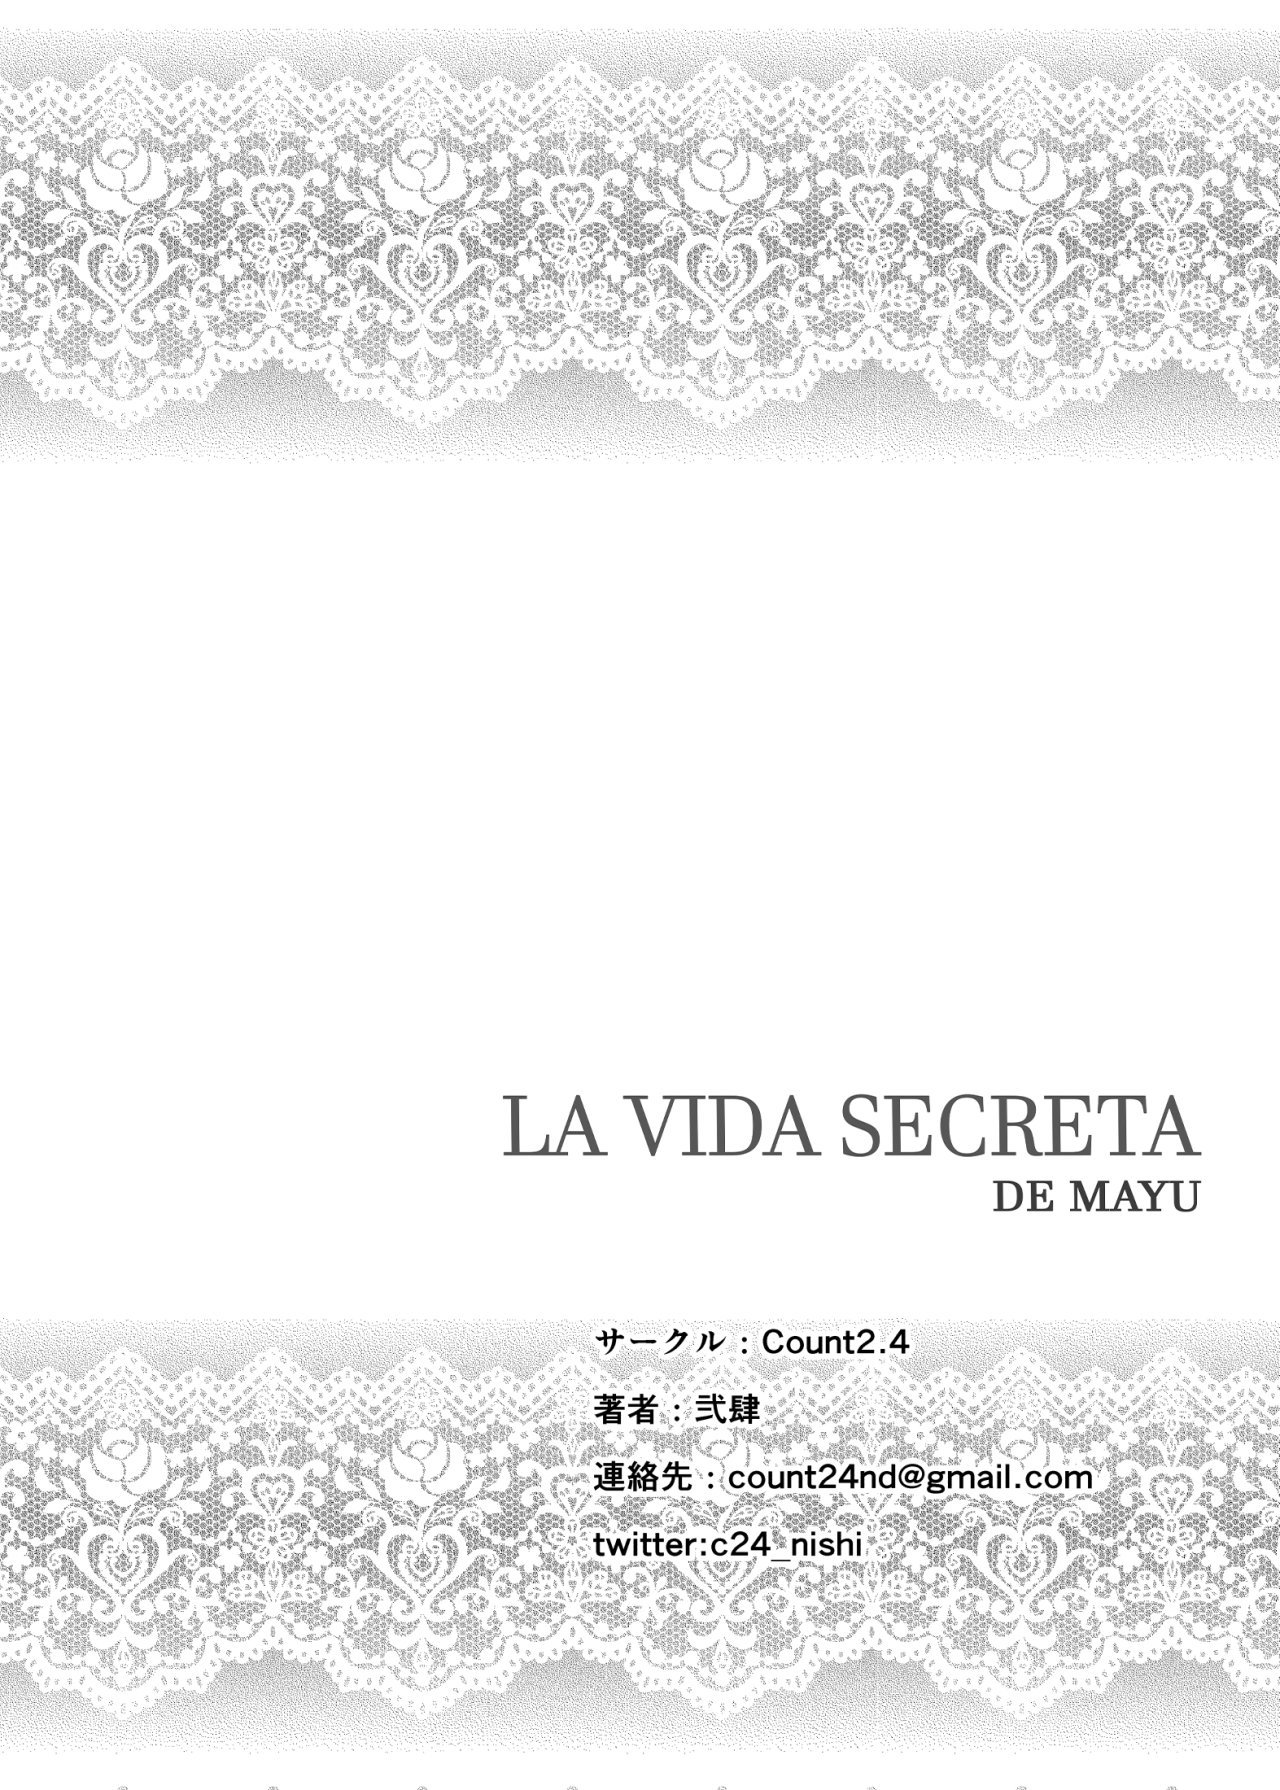 La vida secreta de MAYU - 21